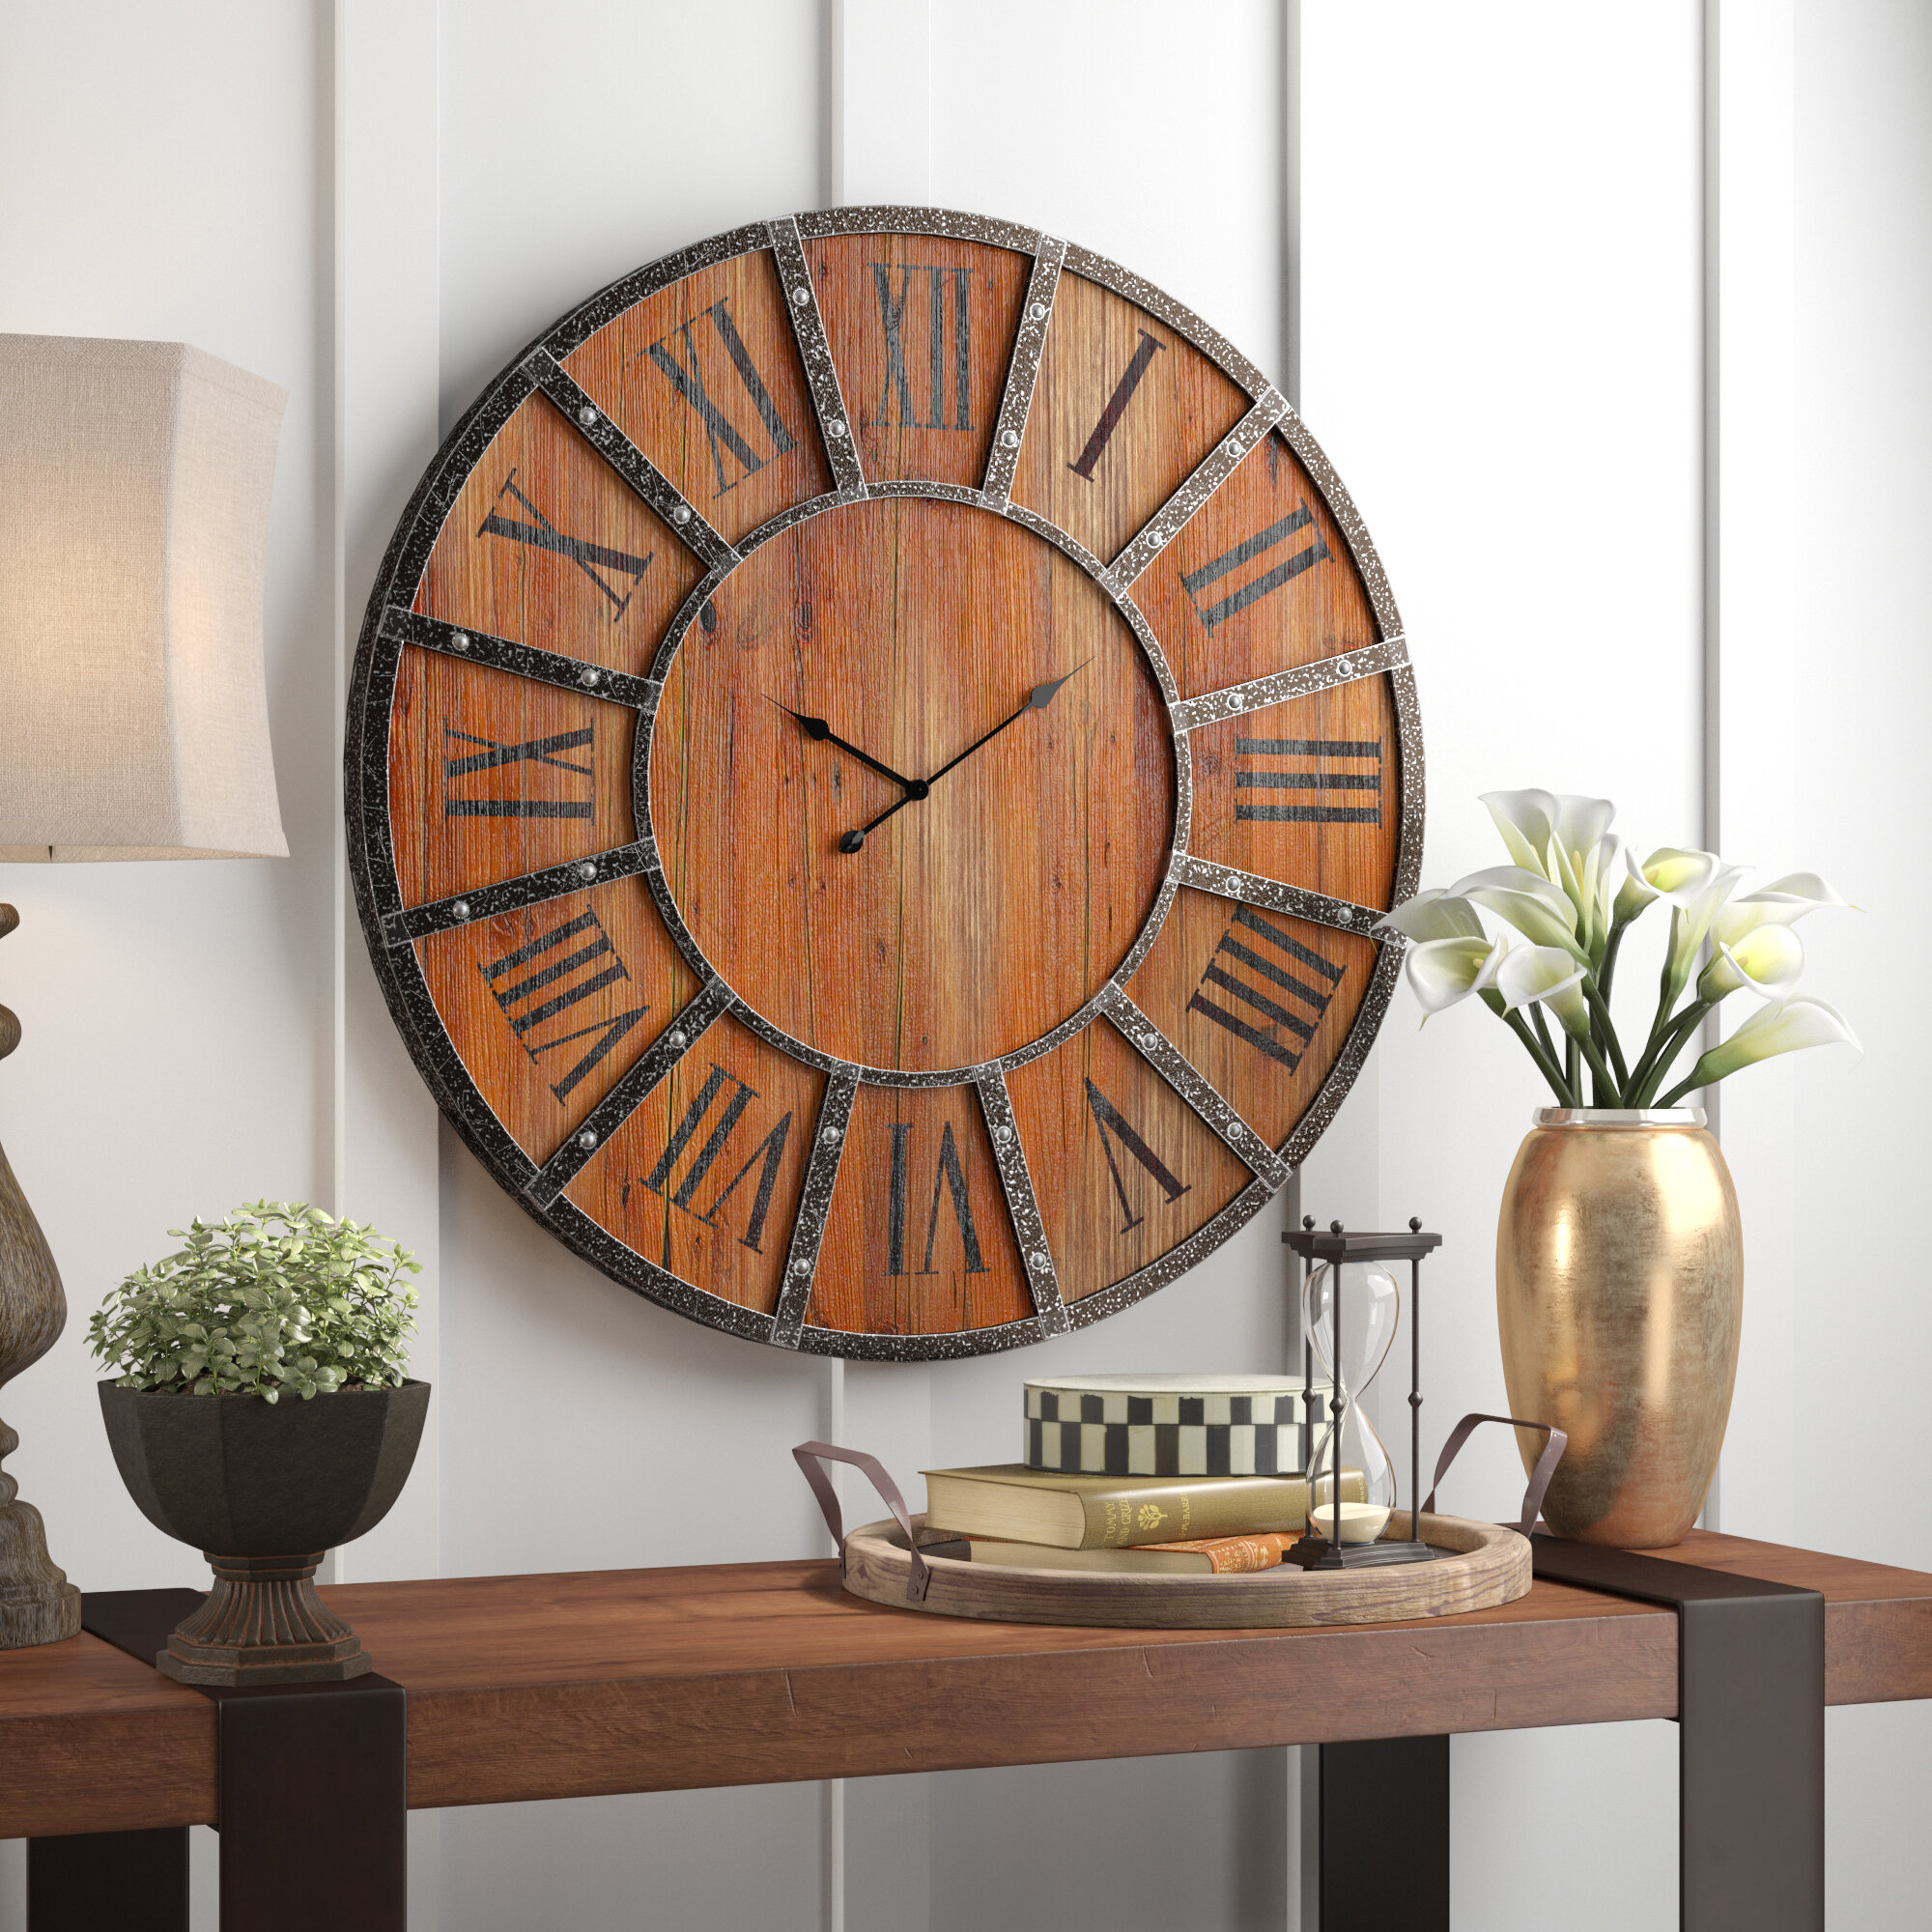 Wayfair | Cabin / Lodge Wall Clocks You'll Love in 2022